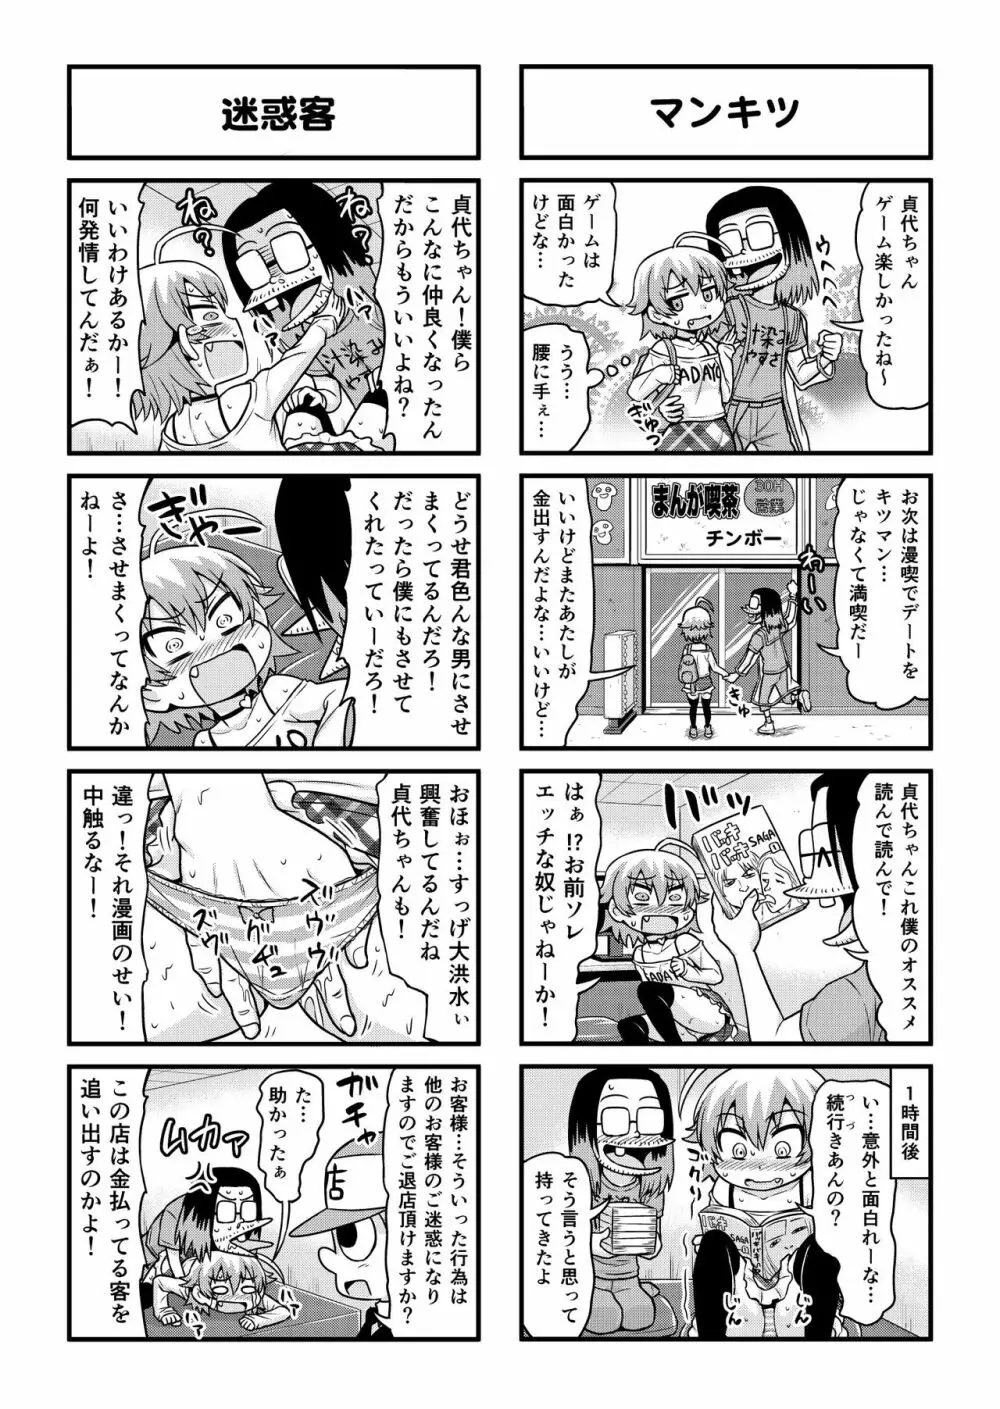 のんきBOY 1-51 - page279